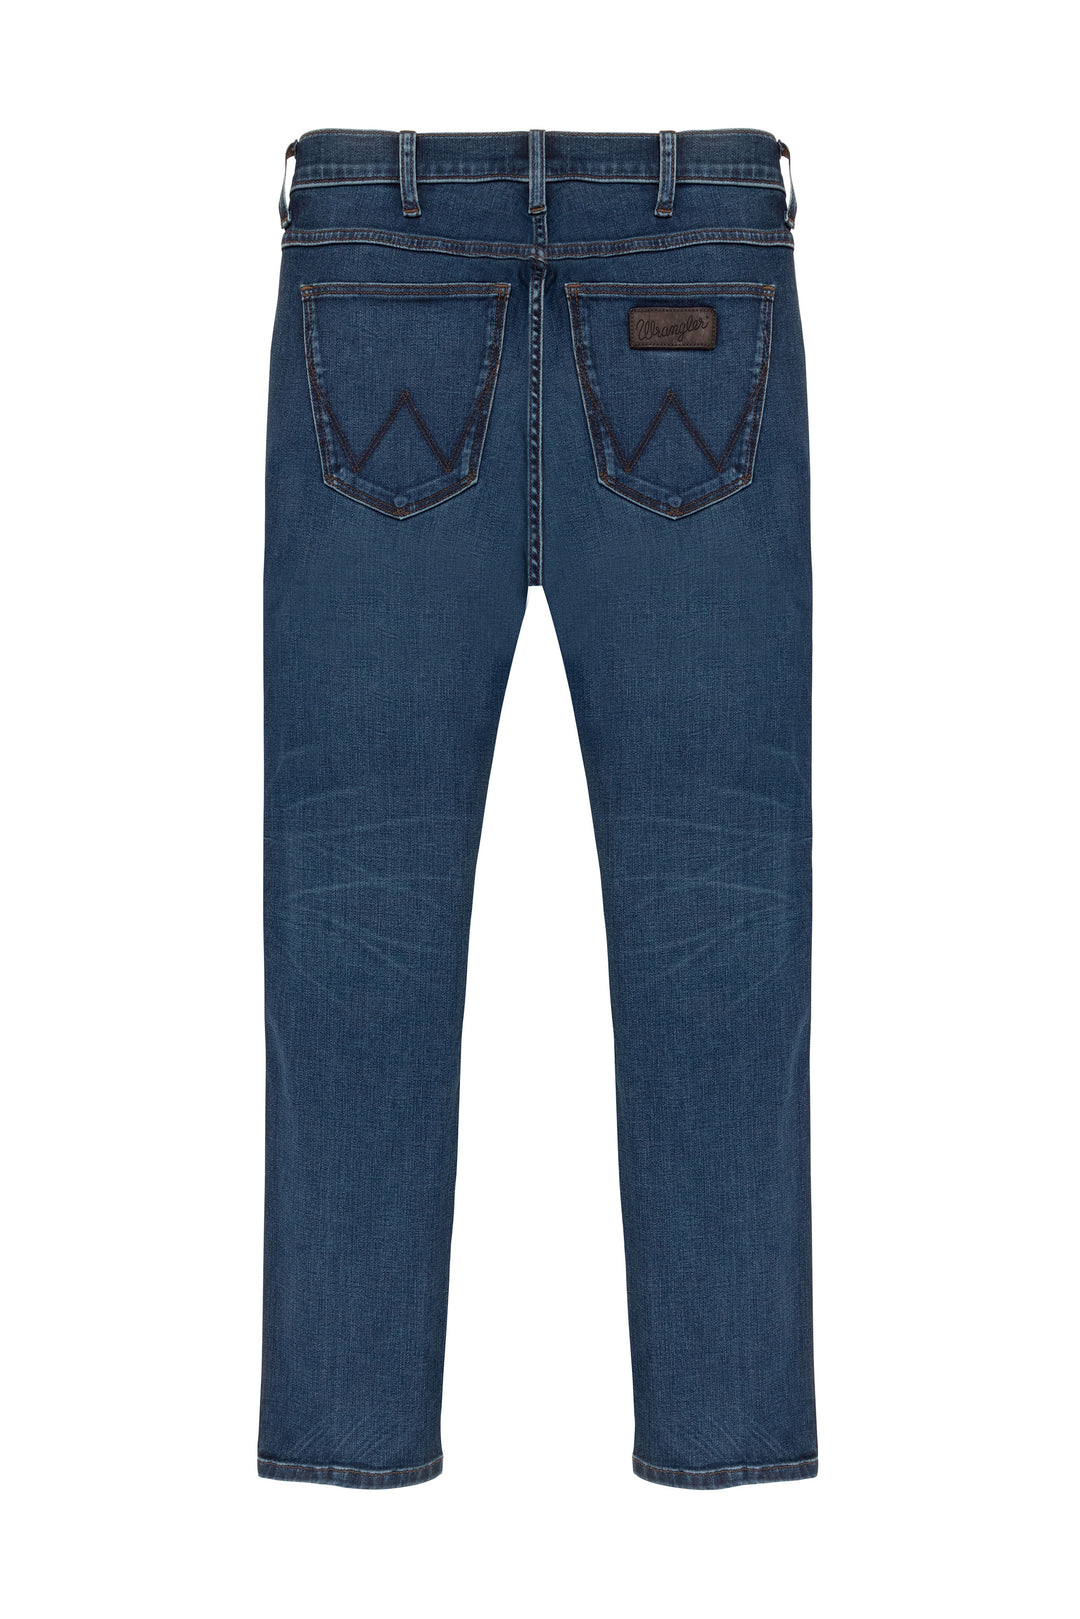 Wrangler - Larston - Heren Slim-fit Jeans - Silkyway